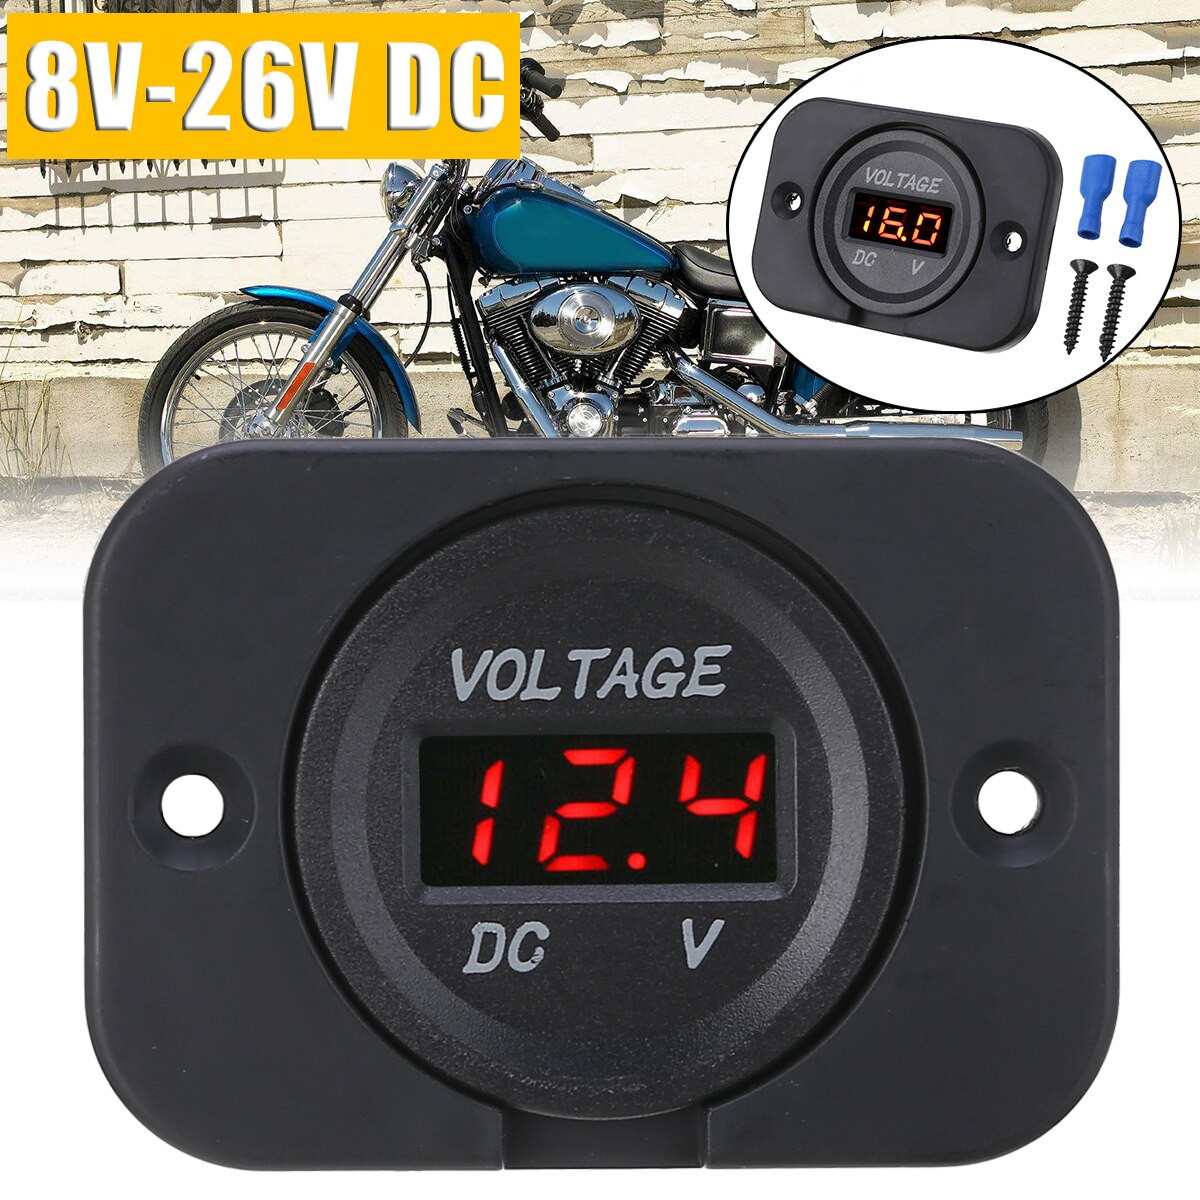 1 sæt 12v-24v røde led digitale voltmeter panel bil motorcykel spændingsmåler med 2 isolerede terminaler